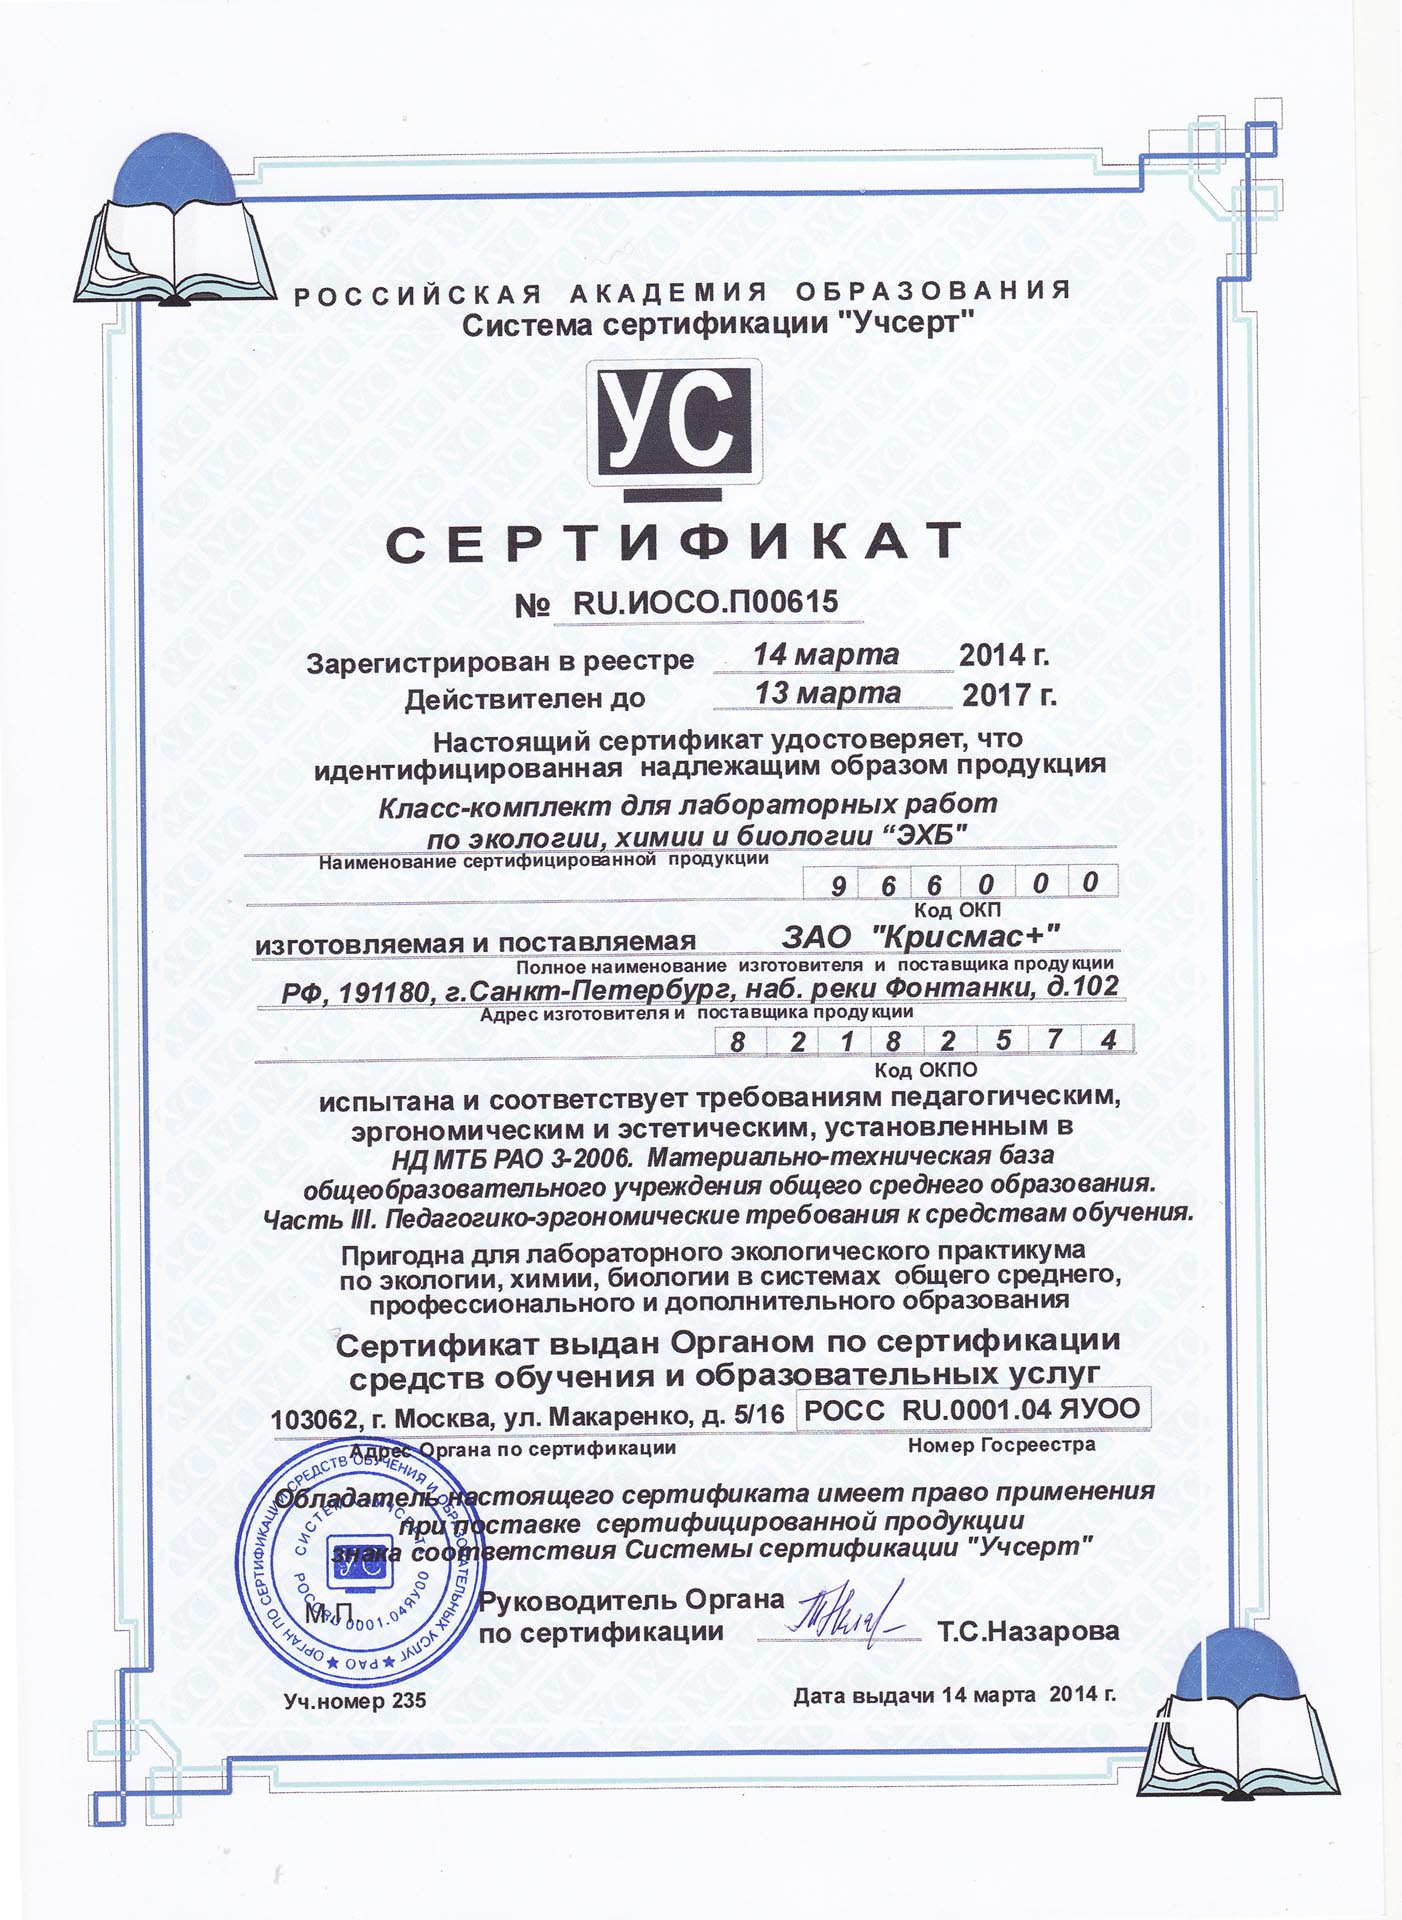 Получен обновленный сертификат на класс-комплект для лабораторных работ по экологии, химии и биологии ЭХБ